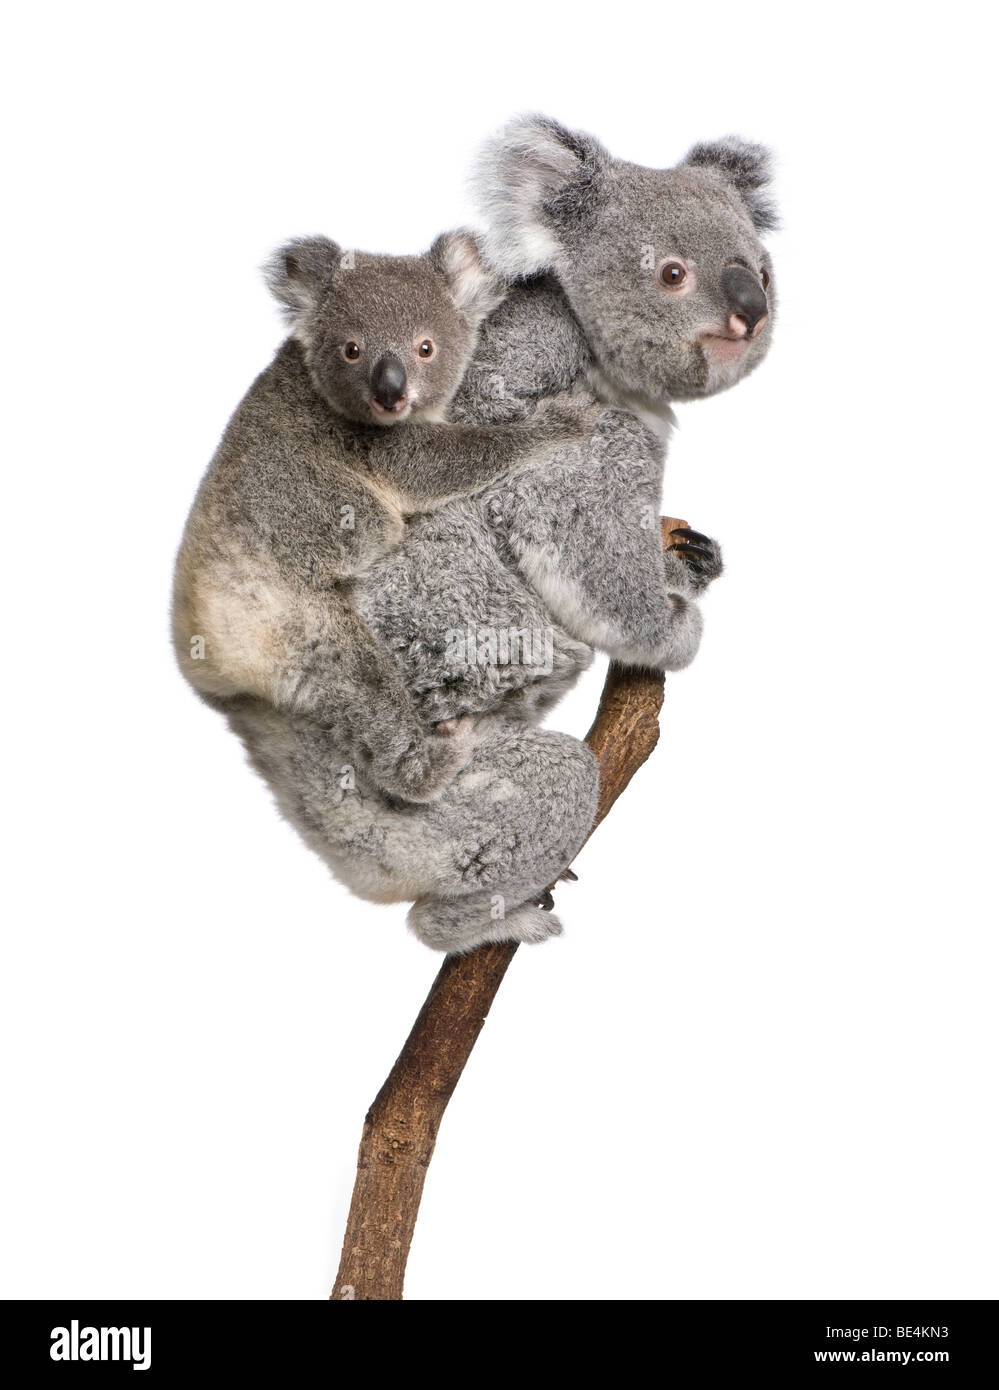 Koalabären Kletterbaum, 4 Jahre und 9 Monate alt, Phascolarctos Cinereus, vor weißem Hintergrund Stockfoto